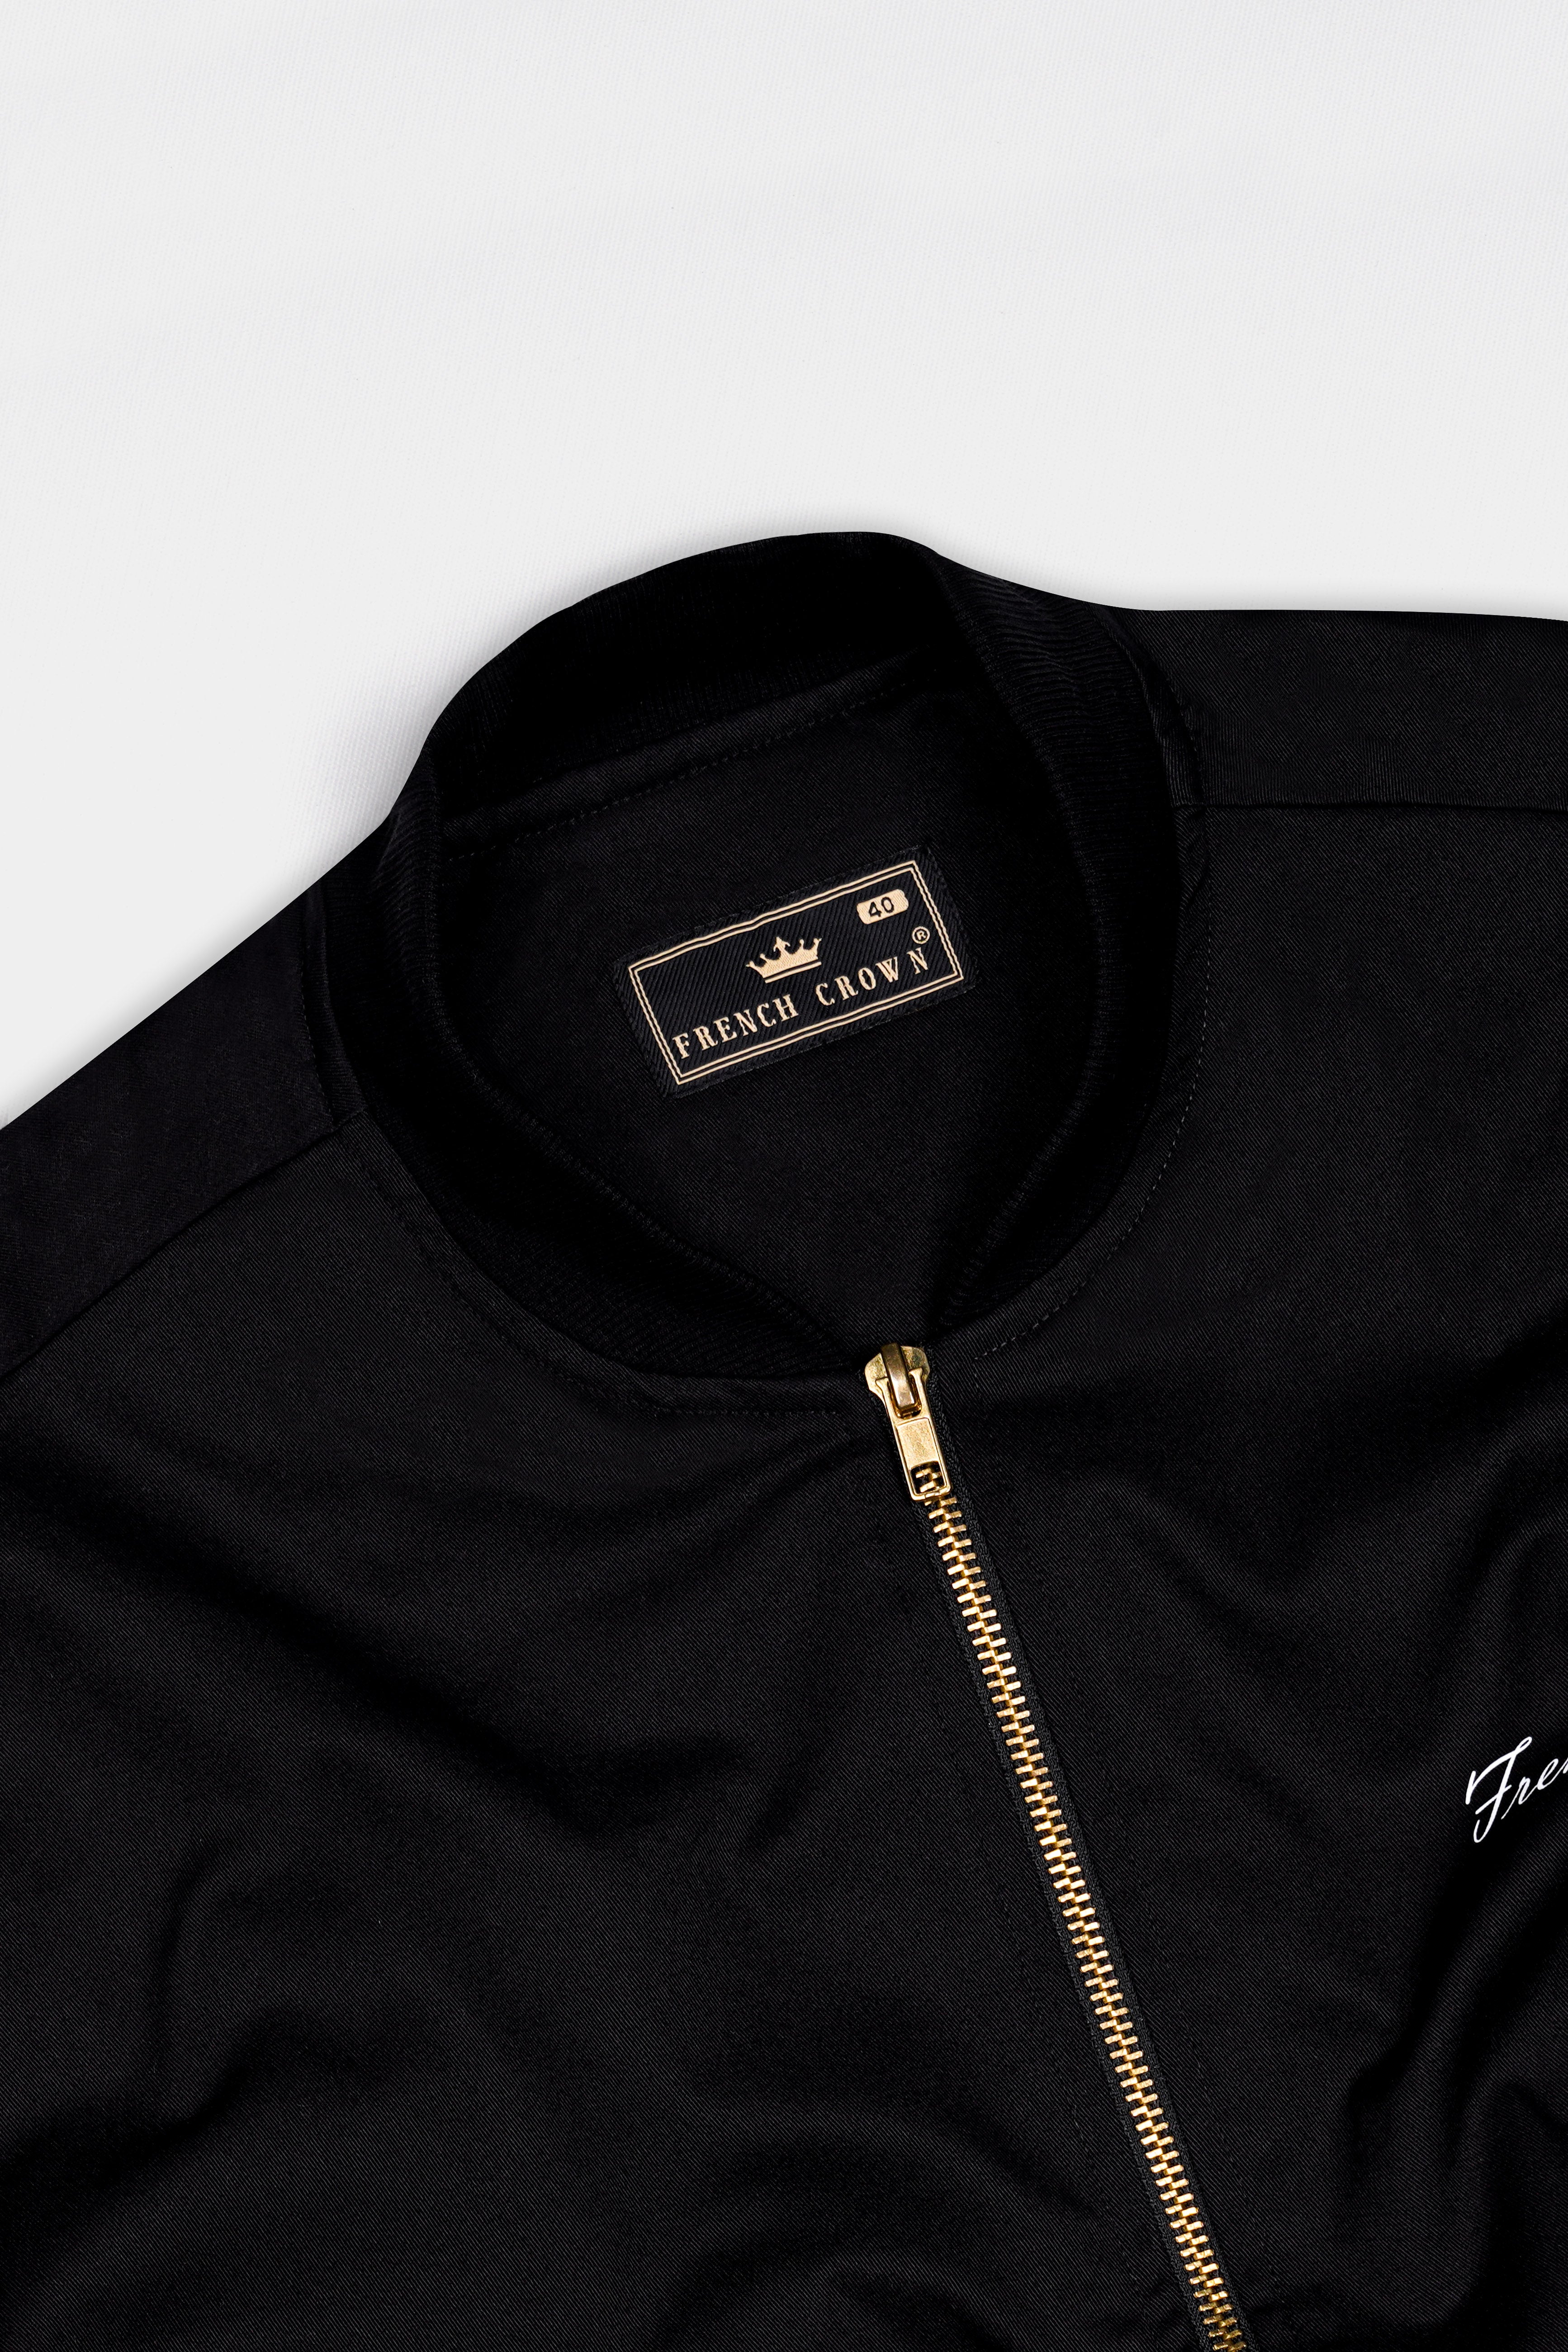 Jade Black Printed Premium Cotton Signature Bomber Jacket